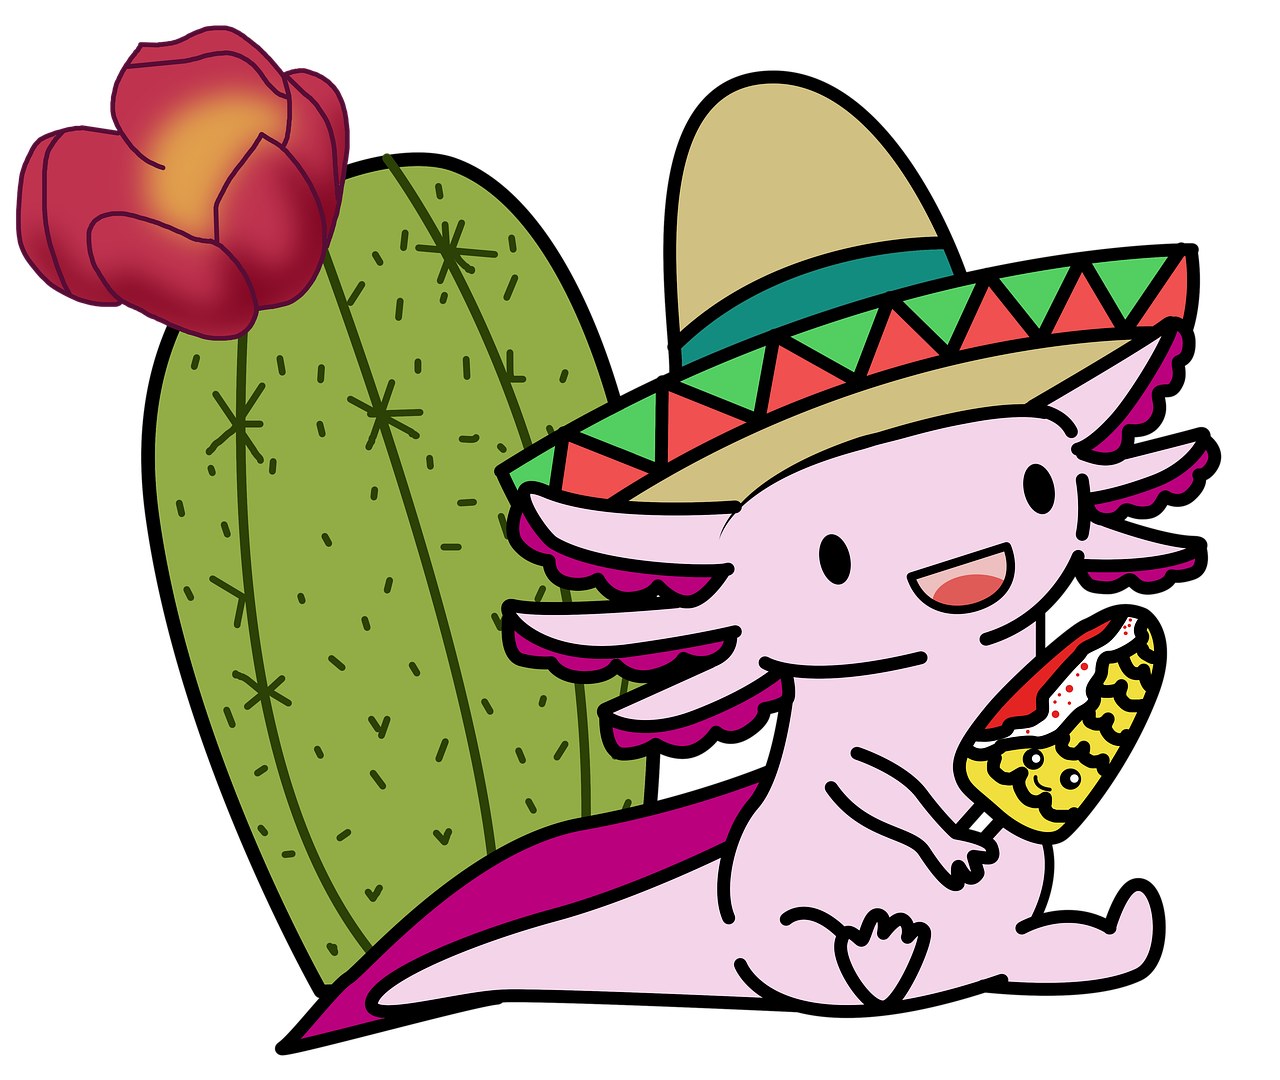 imagen caricatura de un ajolote mexicano sentado junto a un maguey, usa sombrero de paja y está comiendo un elote. Créditos: pixabay.com